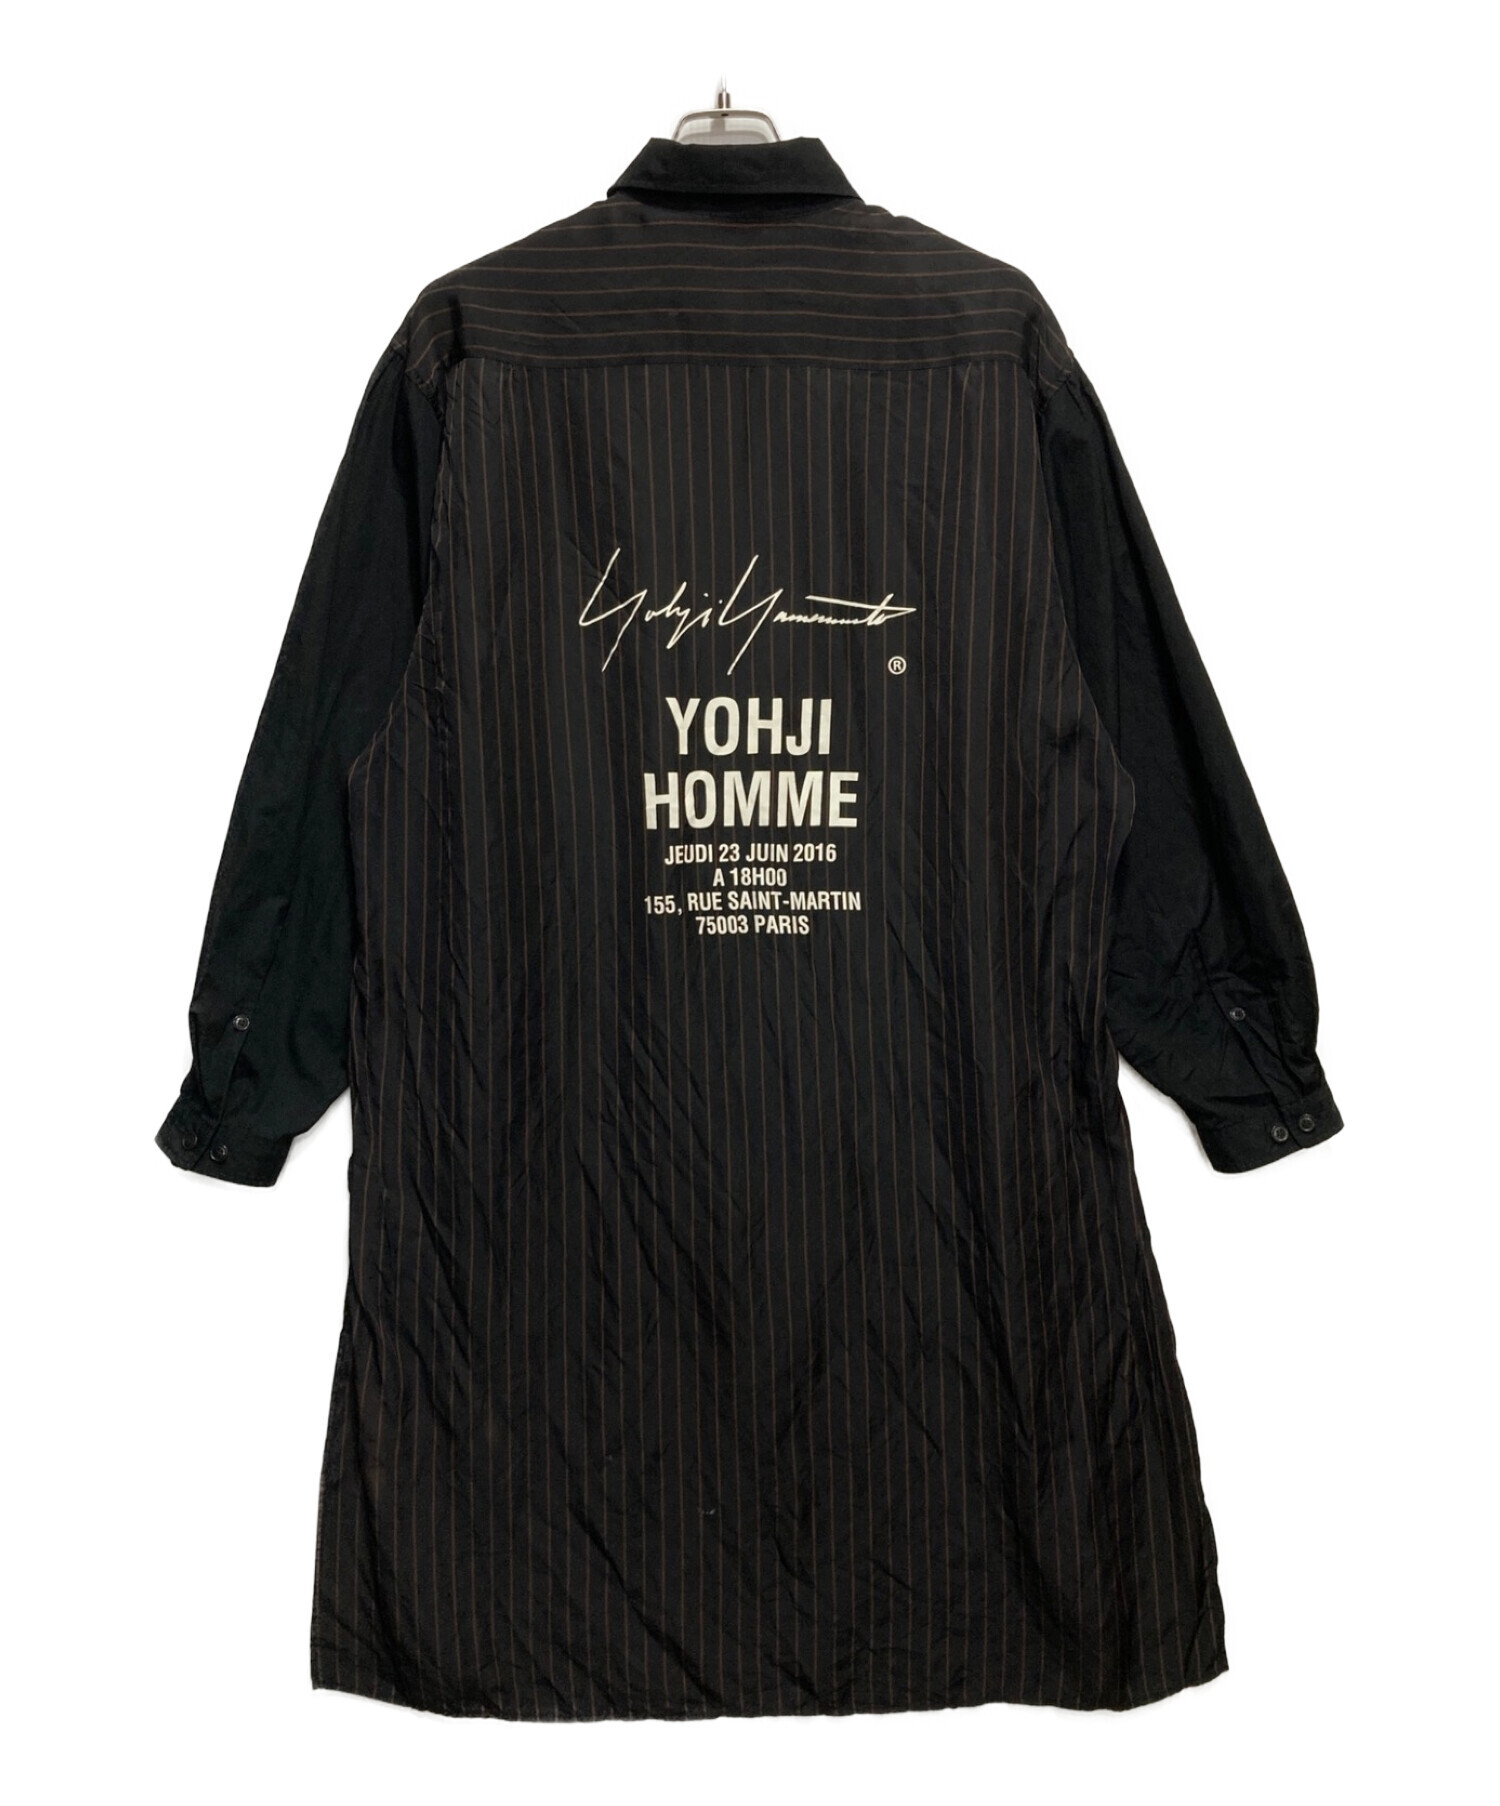 Yohji Yamamoto pour homme (ヨウジヤマモト プールオム) スタッフシャツ ブラック サイズ:3